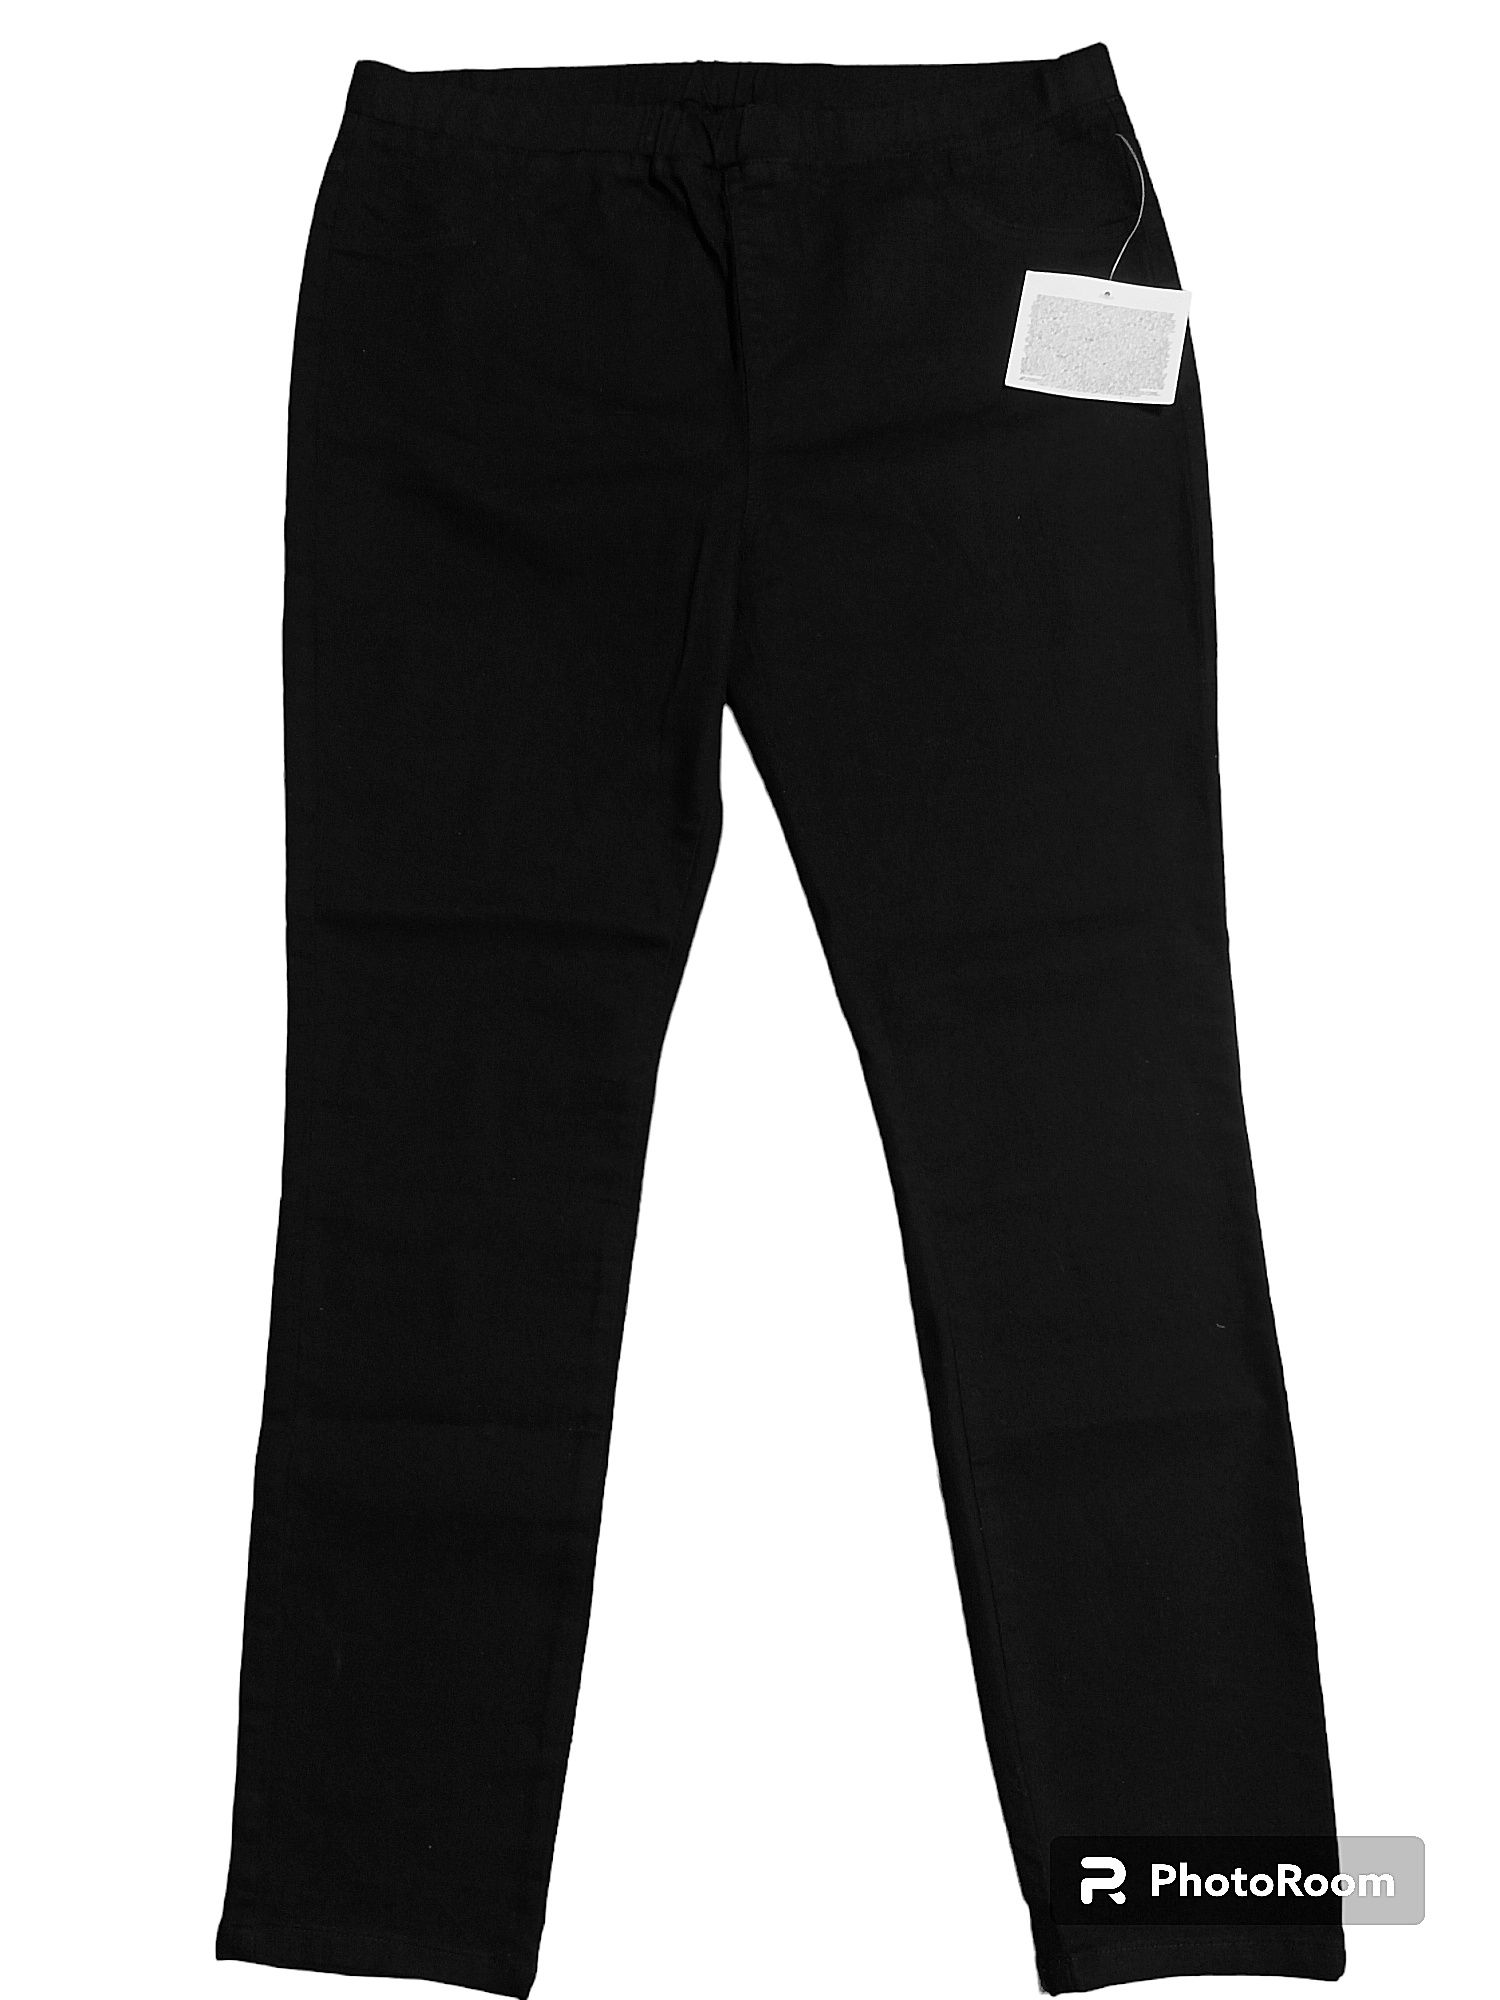 Скинни джинсы женские черные размер 52-54.